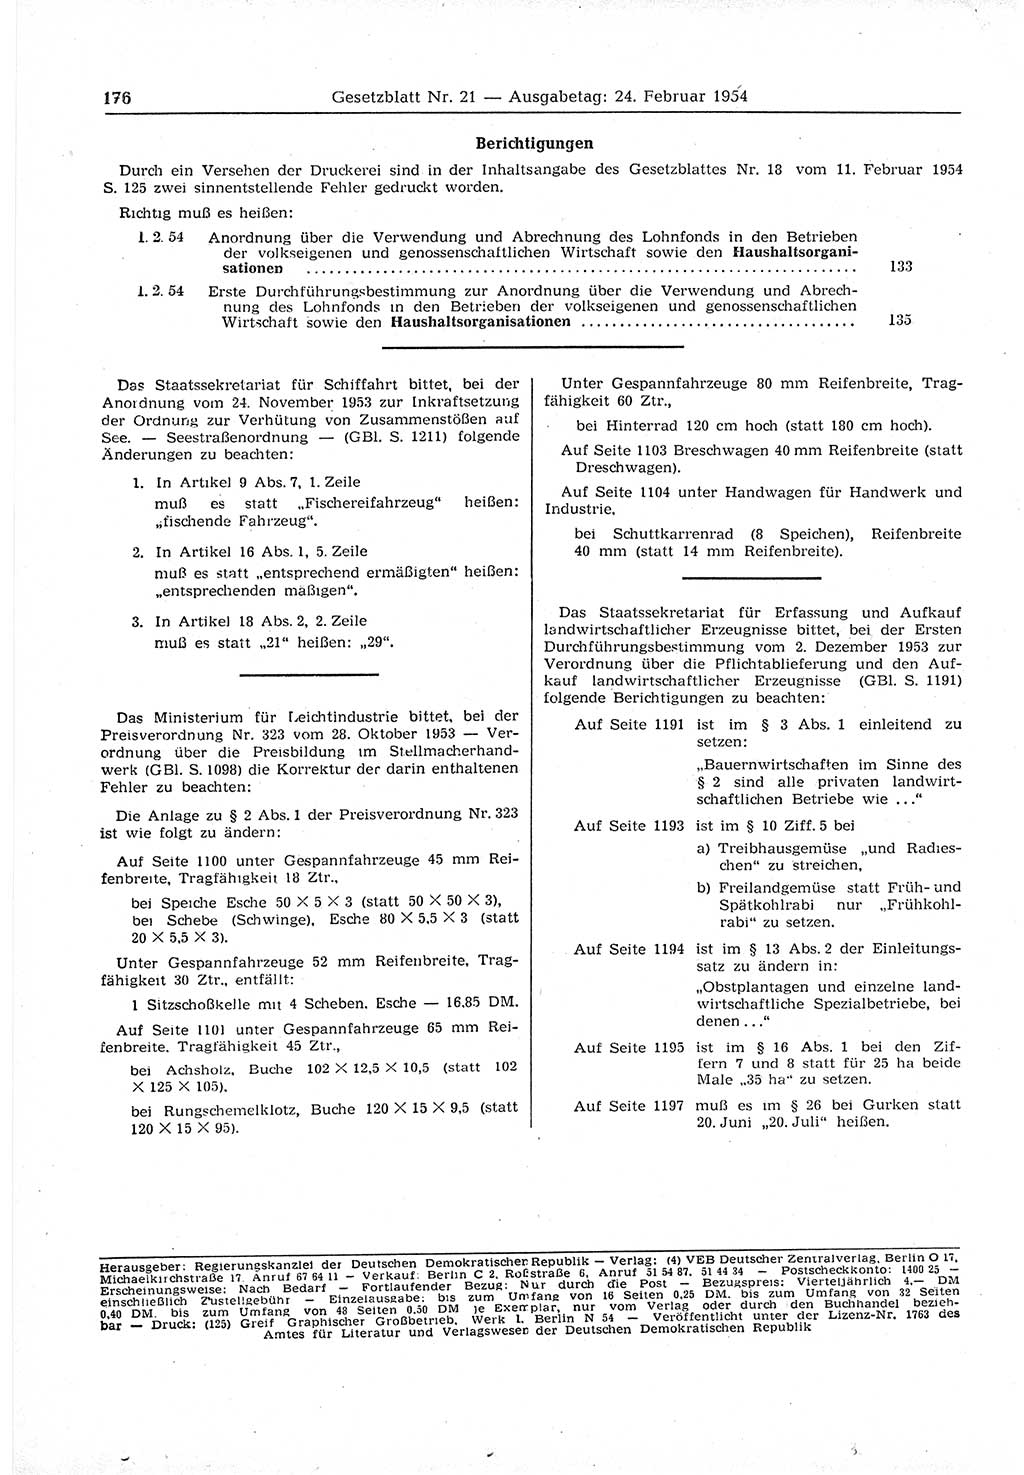 Gesetzblatt (GBl.) der Deutschen Demokratischen Republik (DDR) 1954, Seite 176 (GBl. DDR 1954, S. 176)